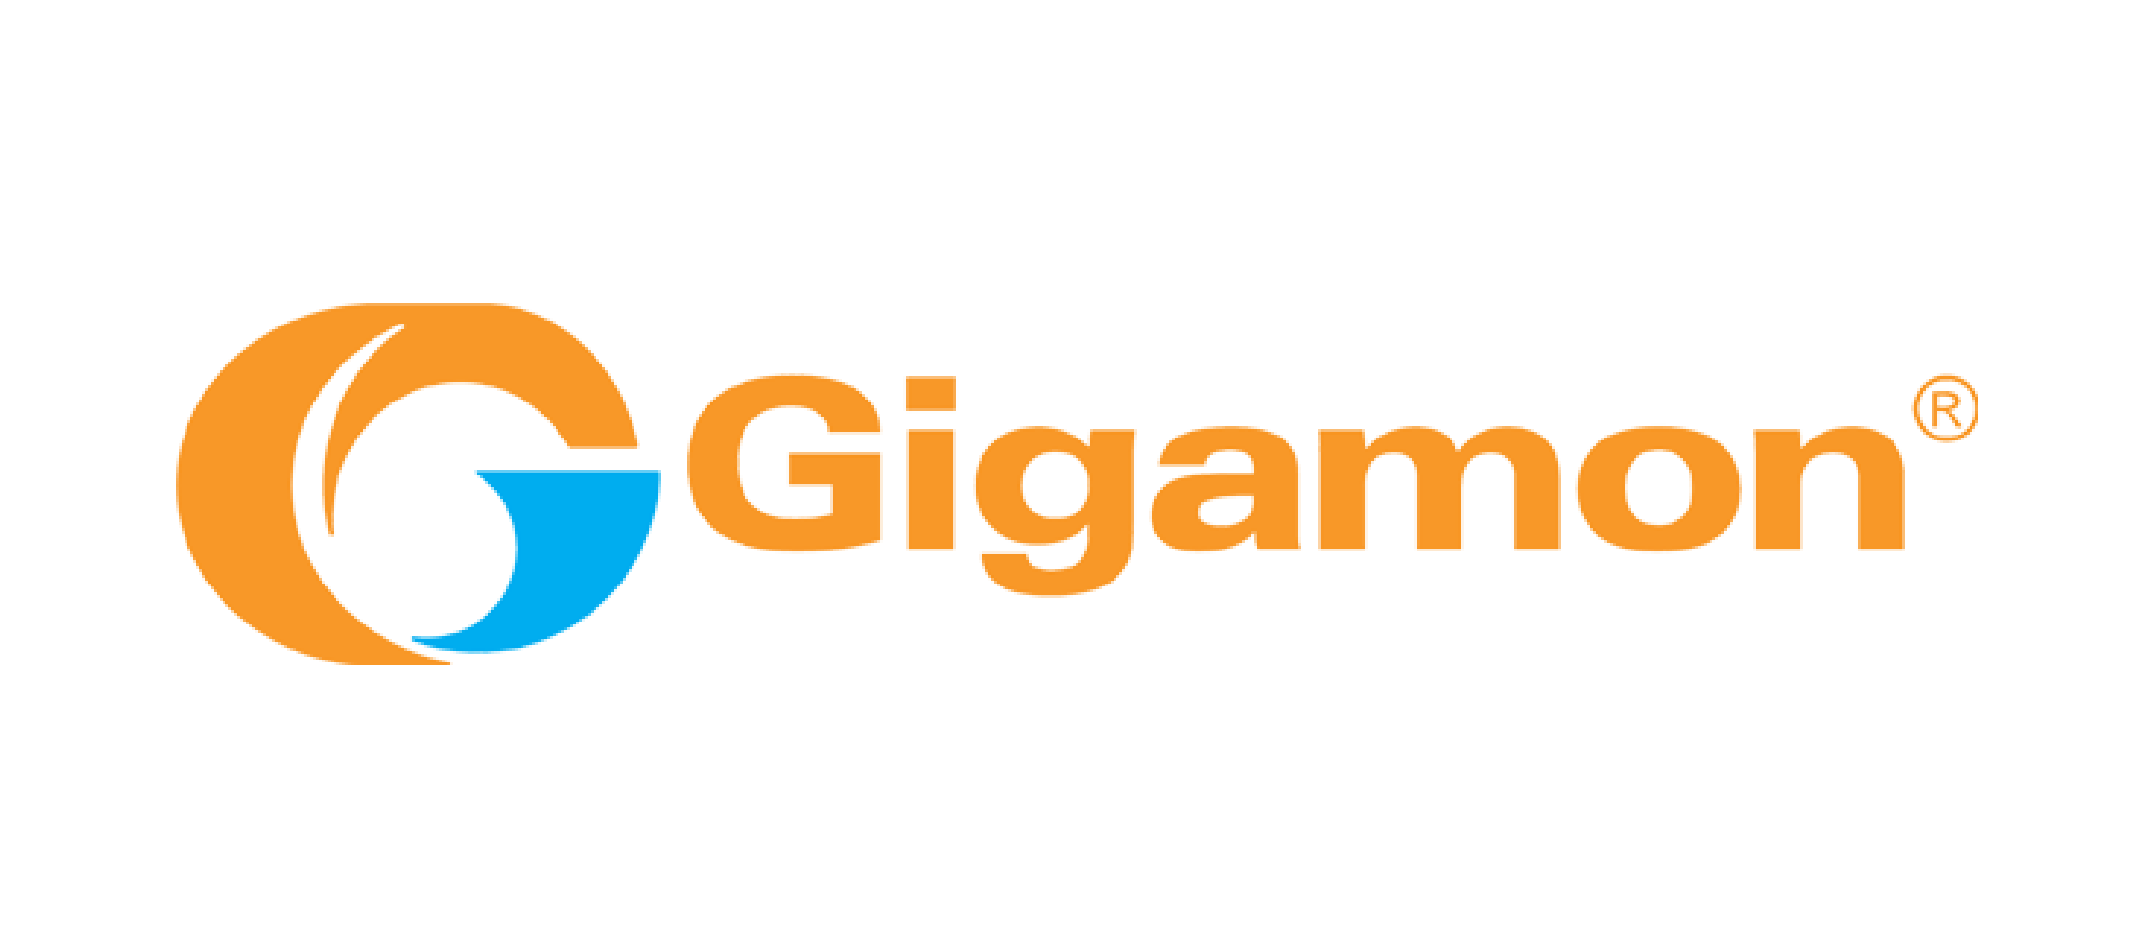 Logo Gigamon